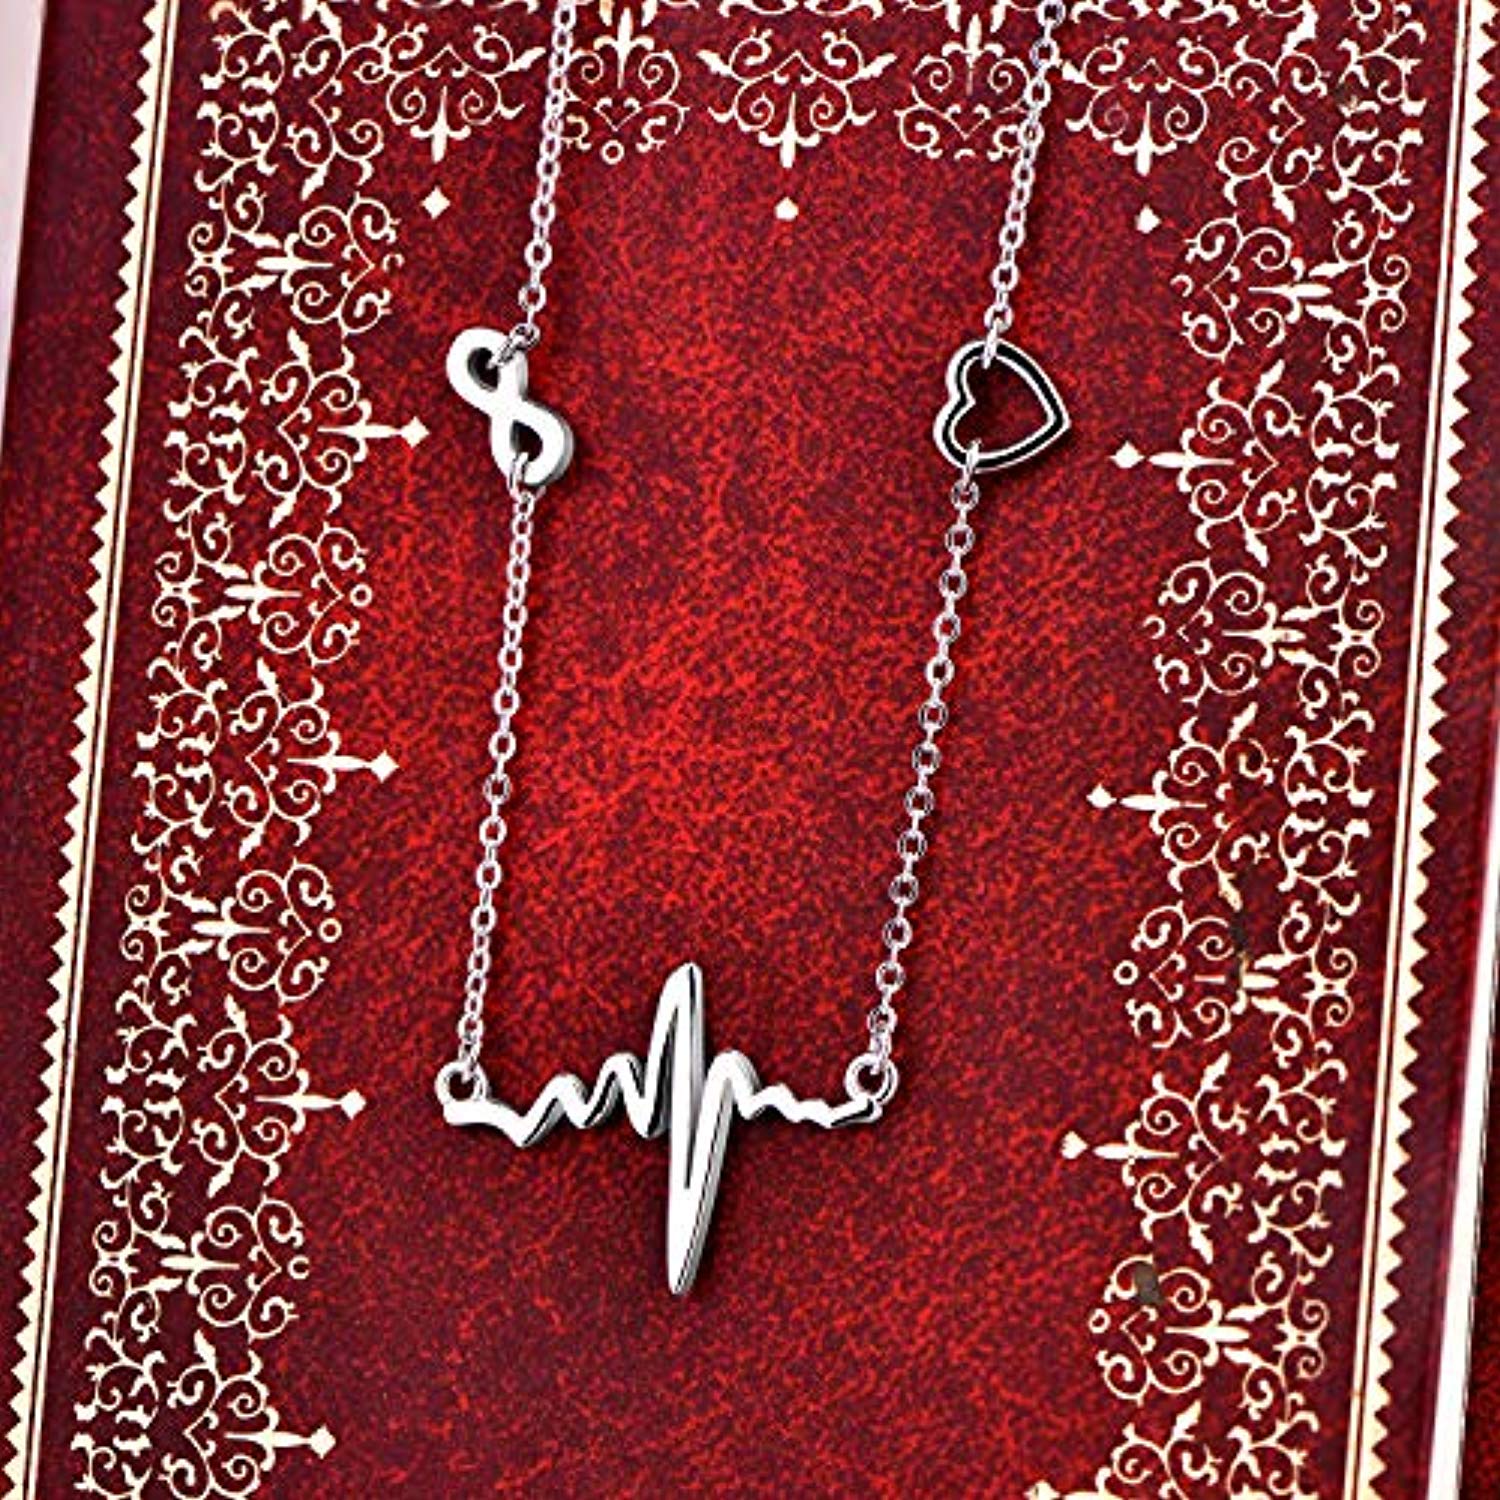 Serotonin Necklace 925 Sterling Silver Heartbeat Pendant Infinity Heart Jewelry